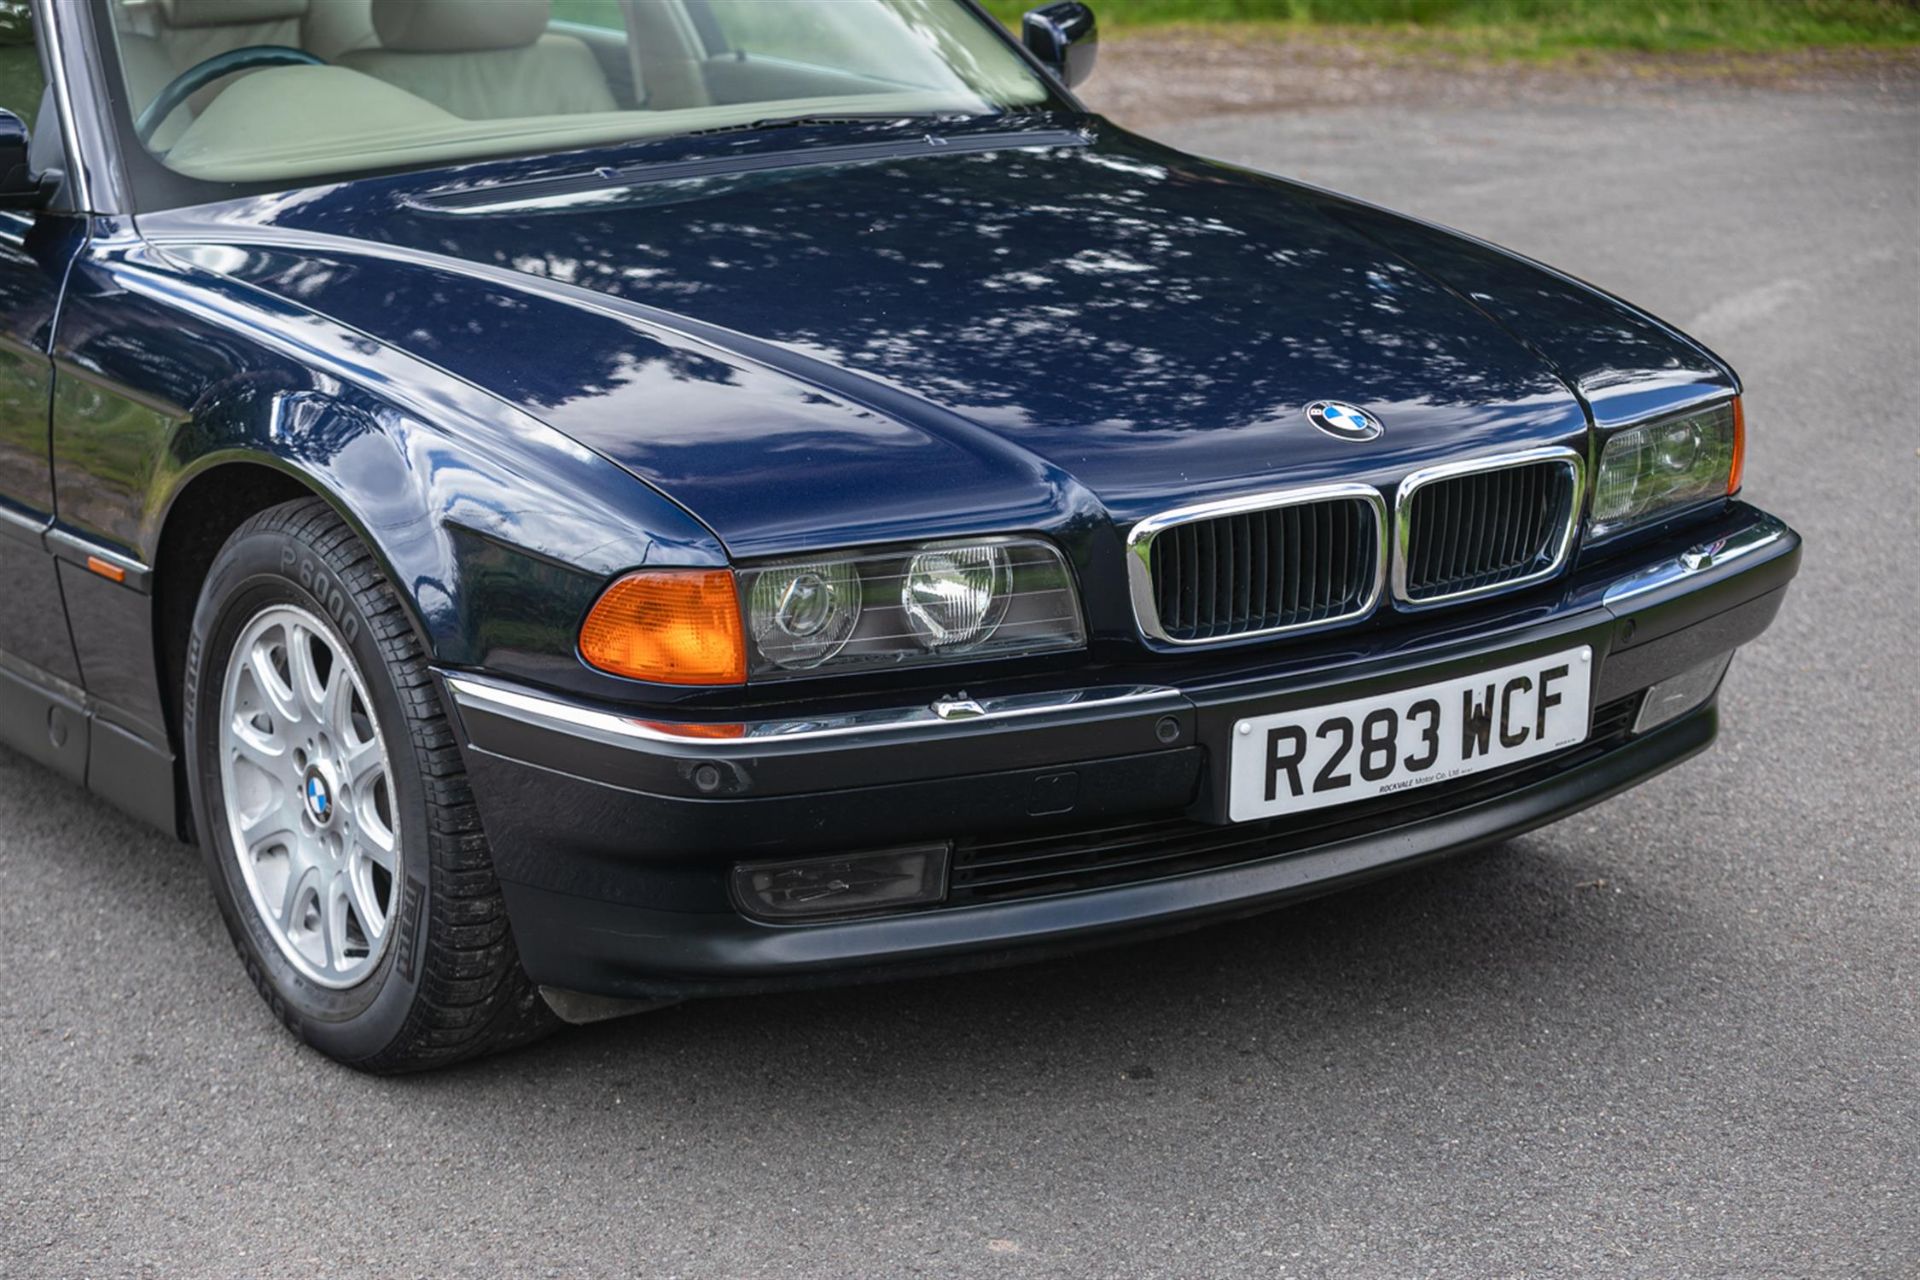 1998 BMW 740i (E38) - Image 8 of 10